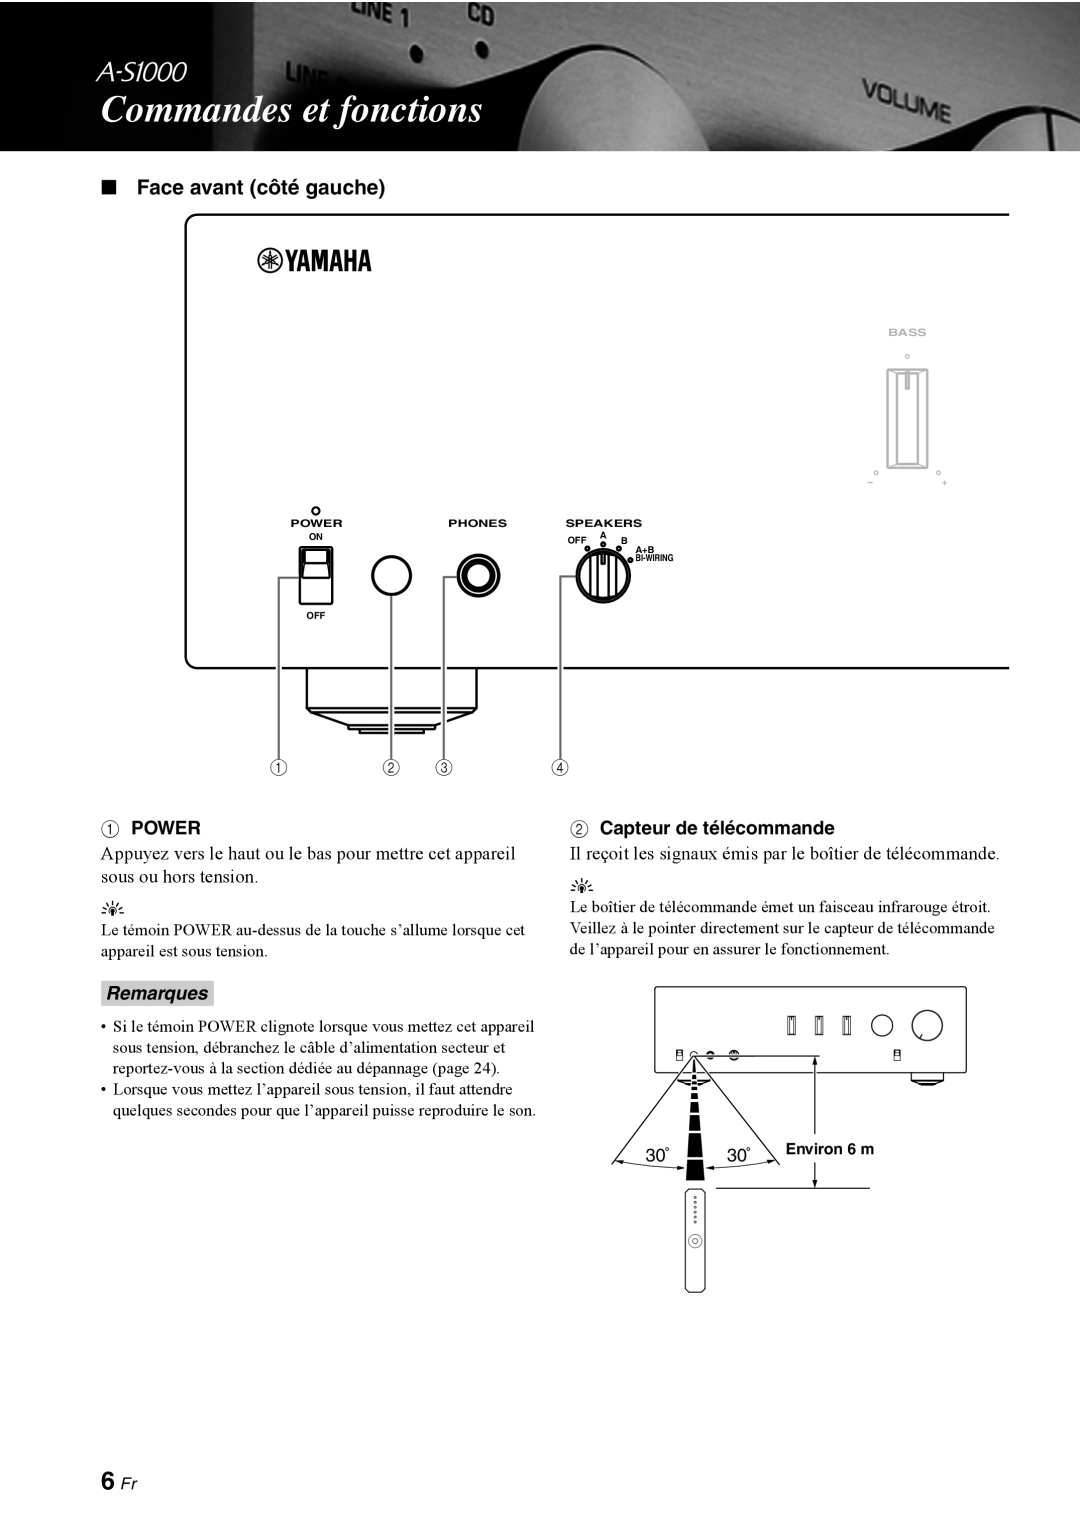 Yamaha A-S1000 owner manual Commandes et fonctions, 6 Fr, Face avant côté gauche, Remarques 